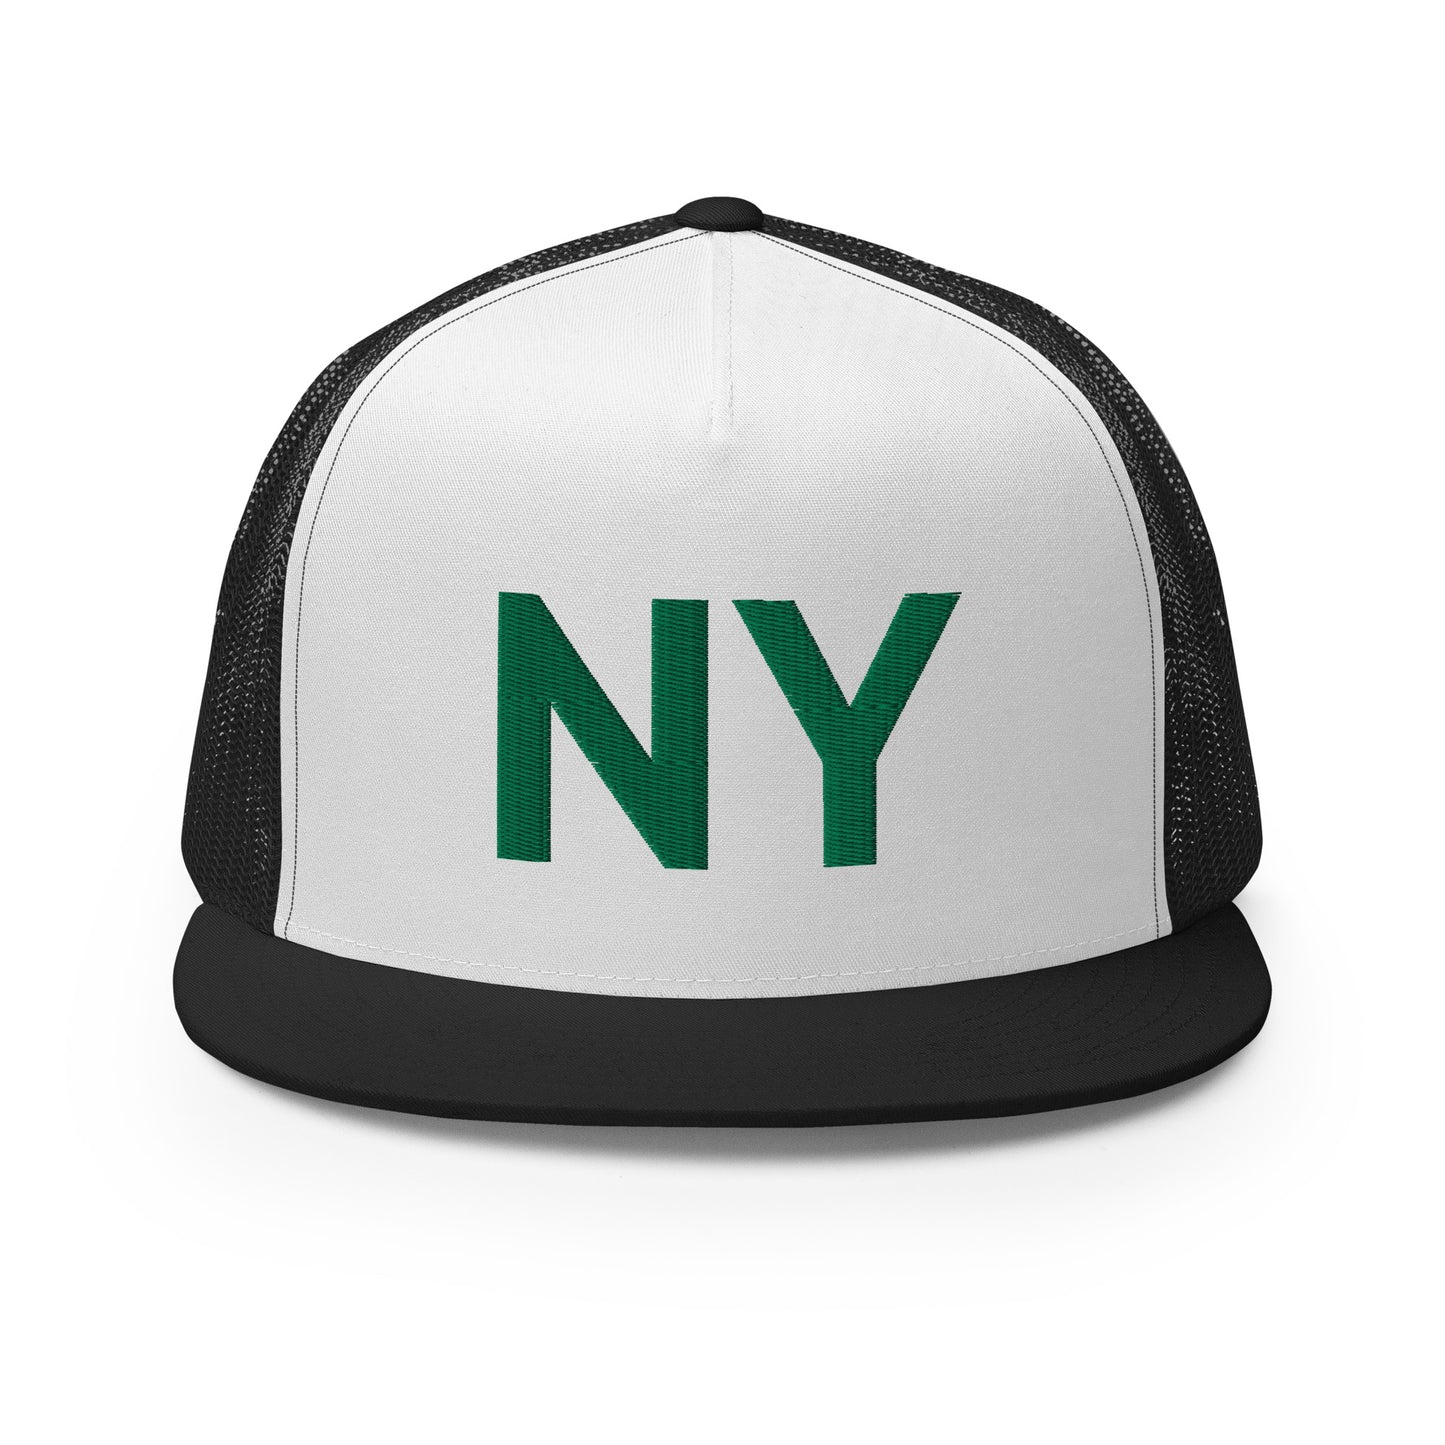 NY Team Trucker Cap